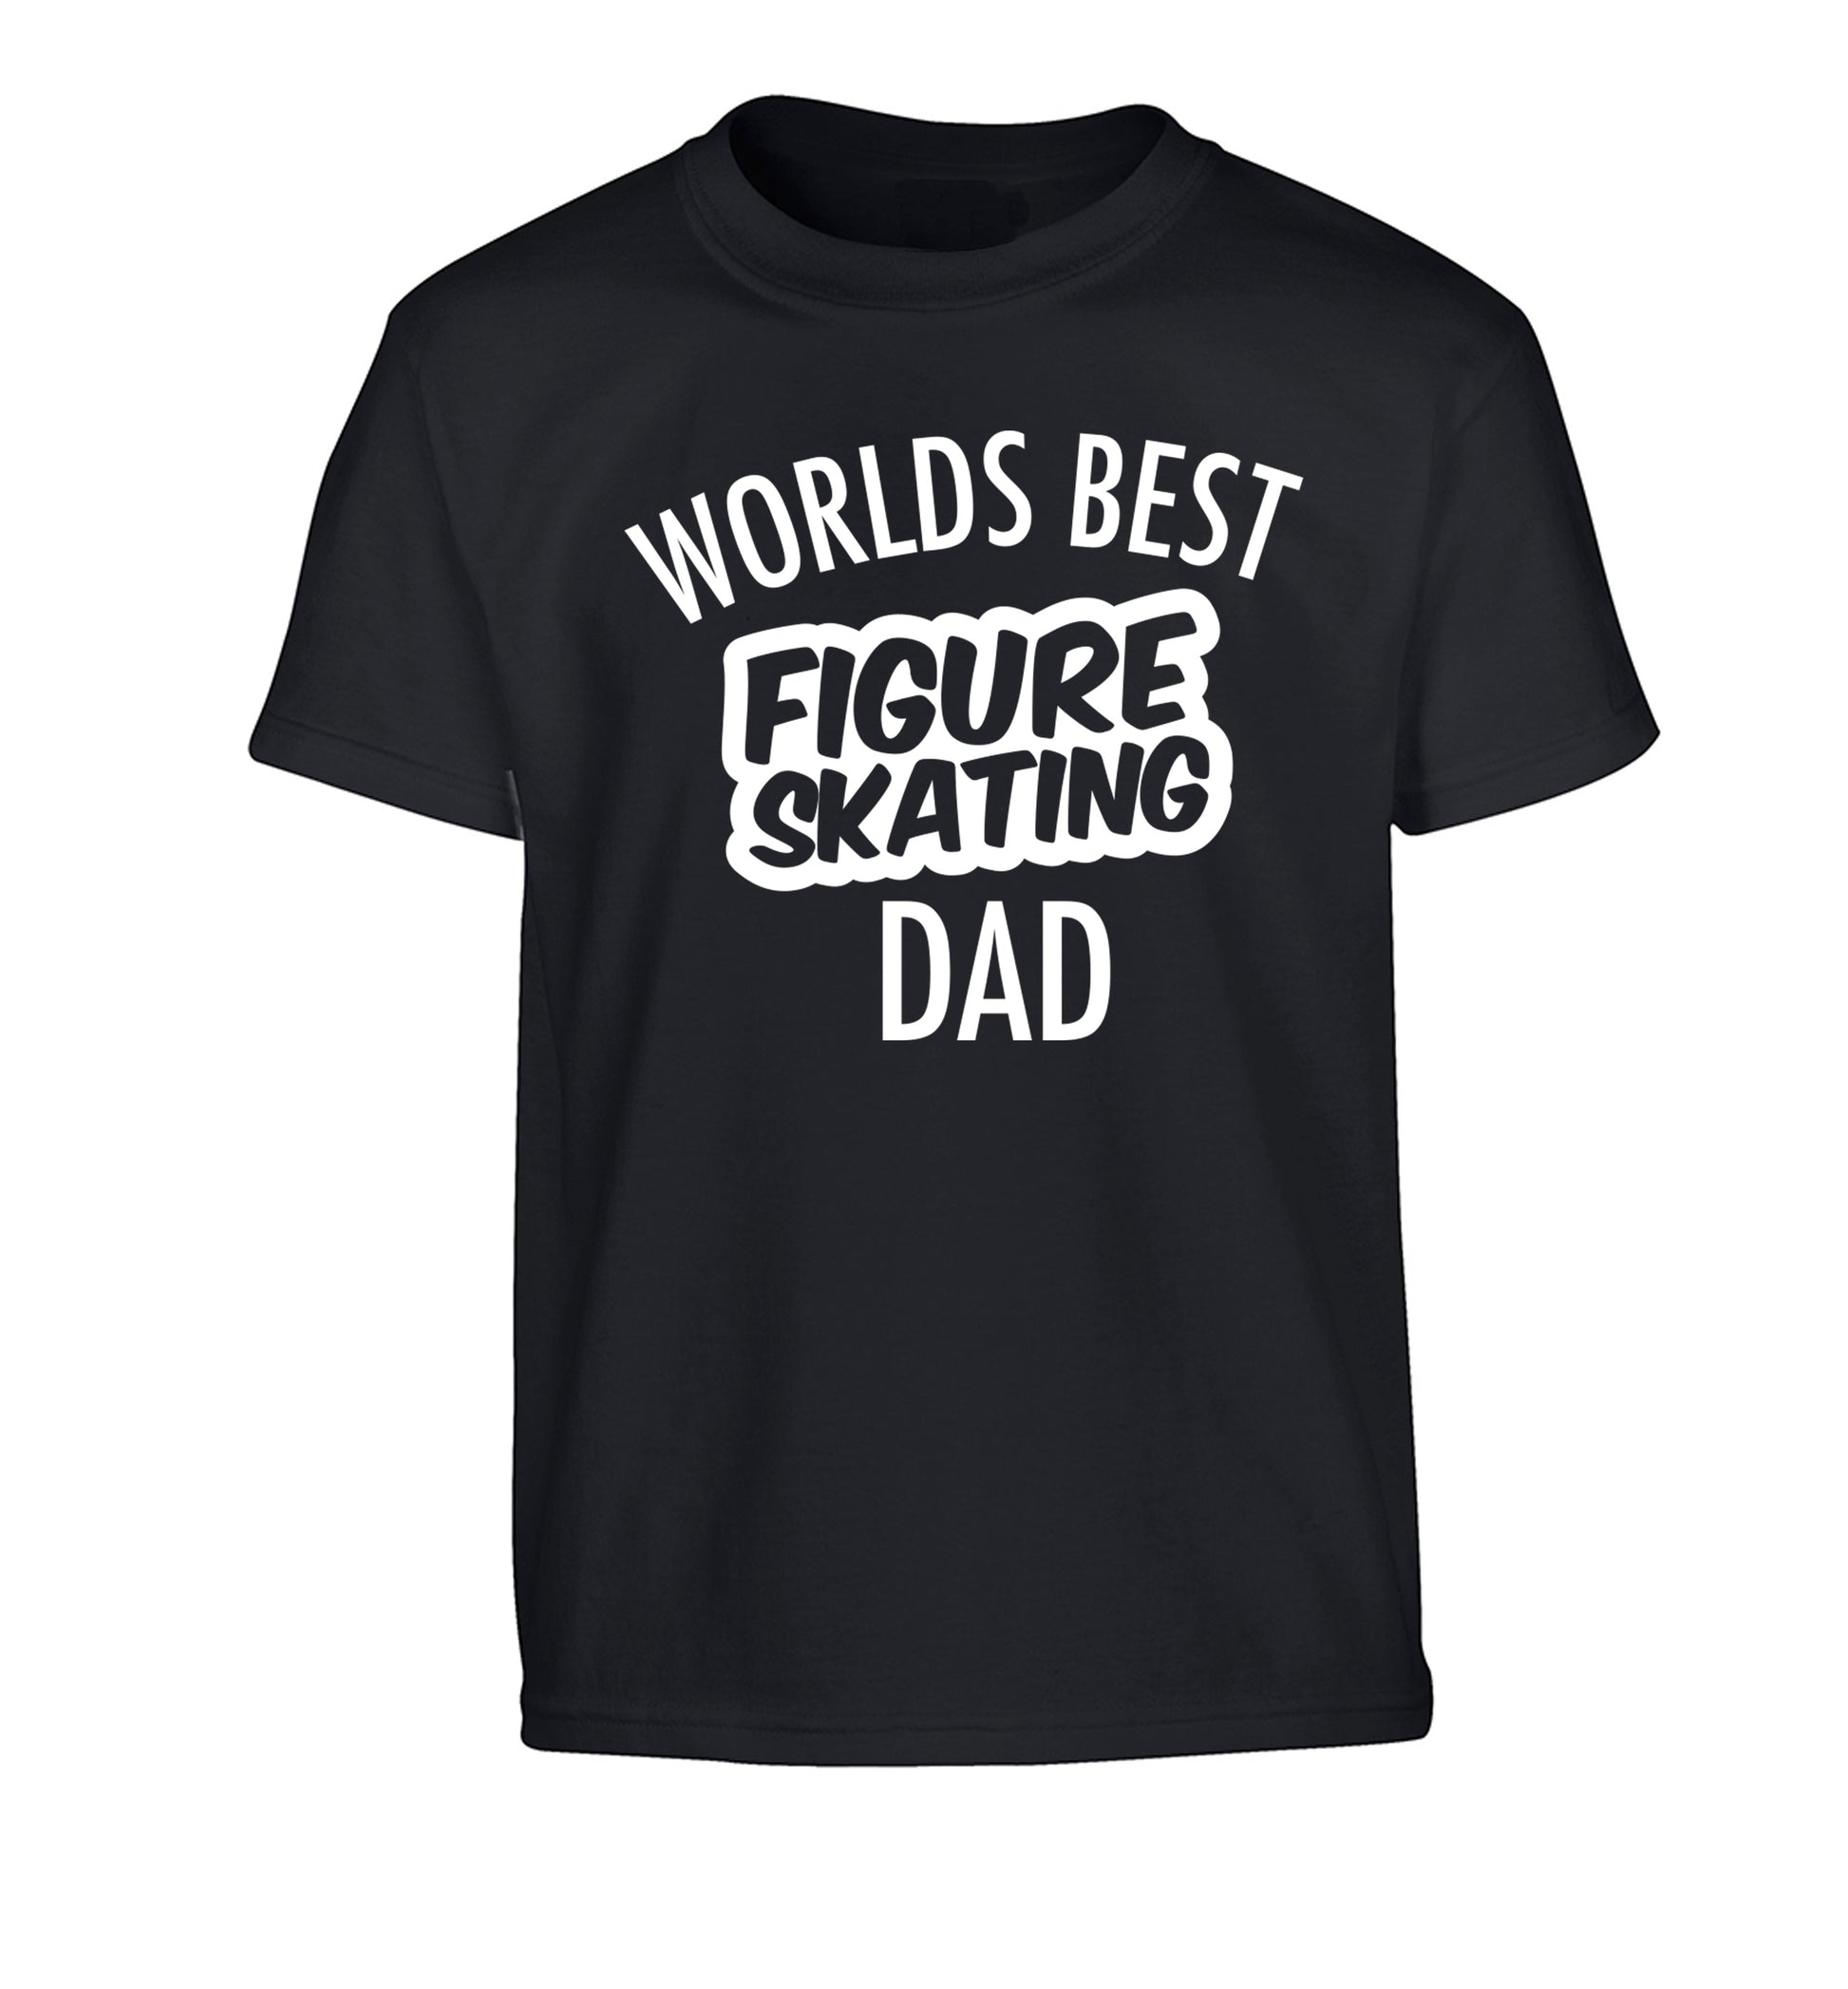 Worlds best figure skating dad Children's black Tshirt 12-14 Years